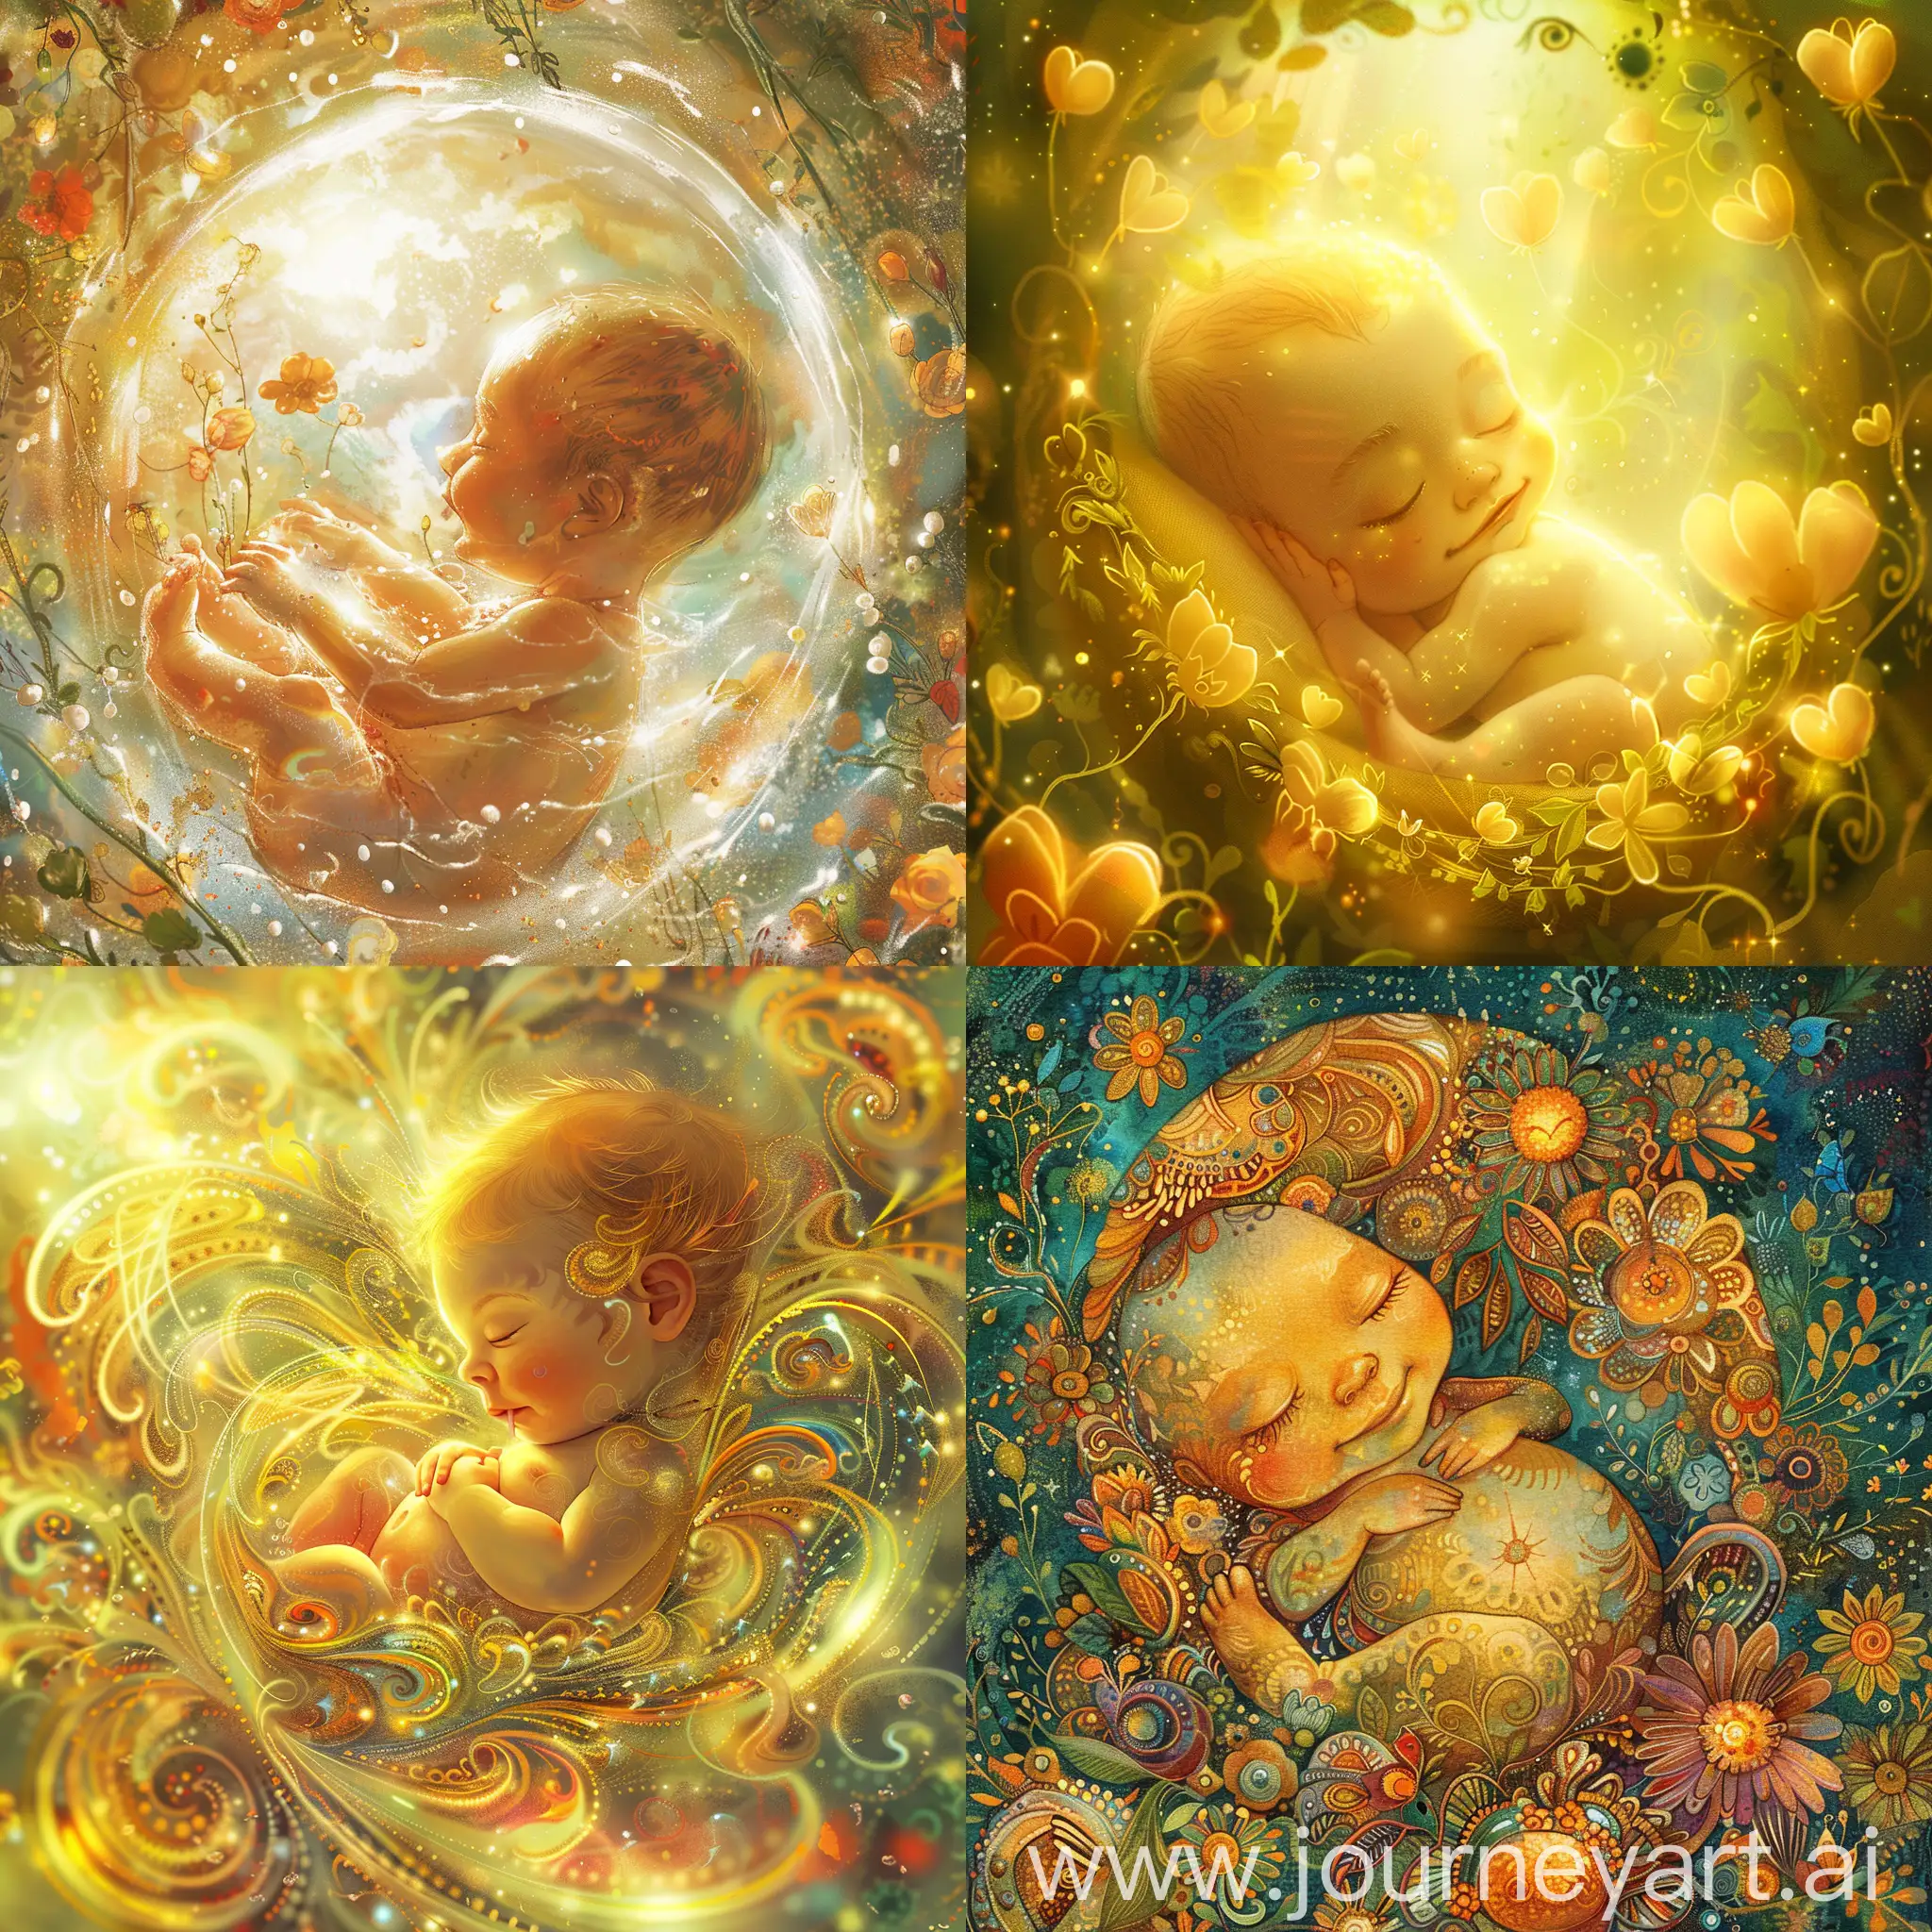 在子宫里的胎儿被爱与光环绕祝福，胎儿很快乐，活泼，健康